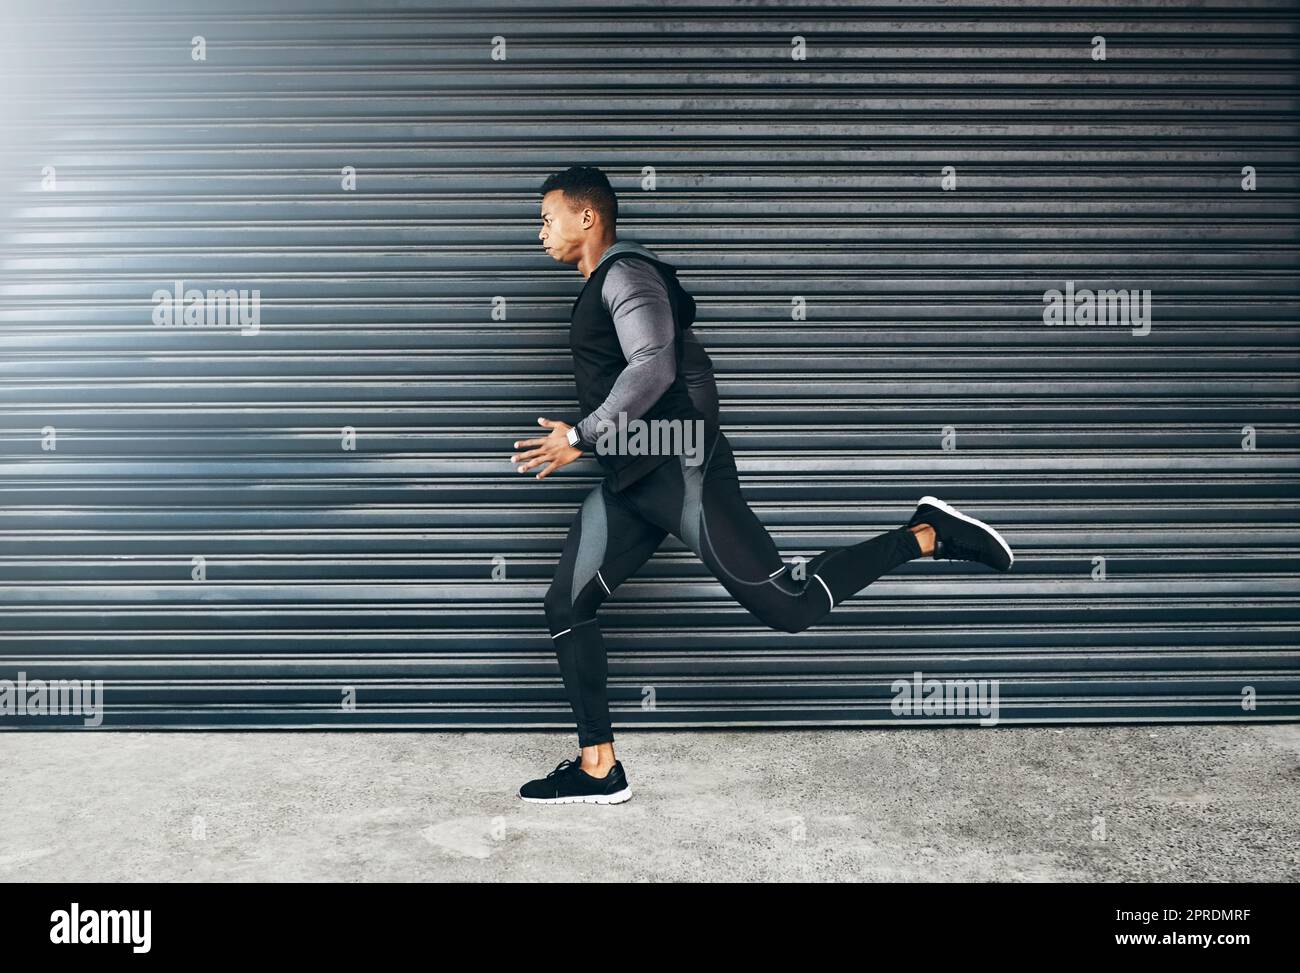 Tutto è possibile attraverso l'autodisciplina. Un giovane sportivo che corre su uno sfondo grigio. Foto Stock